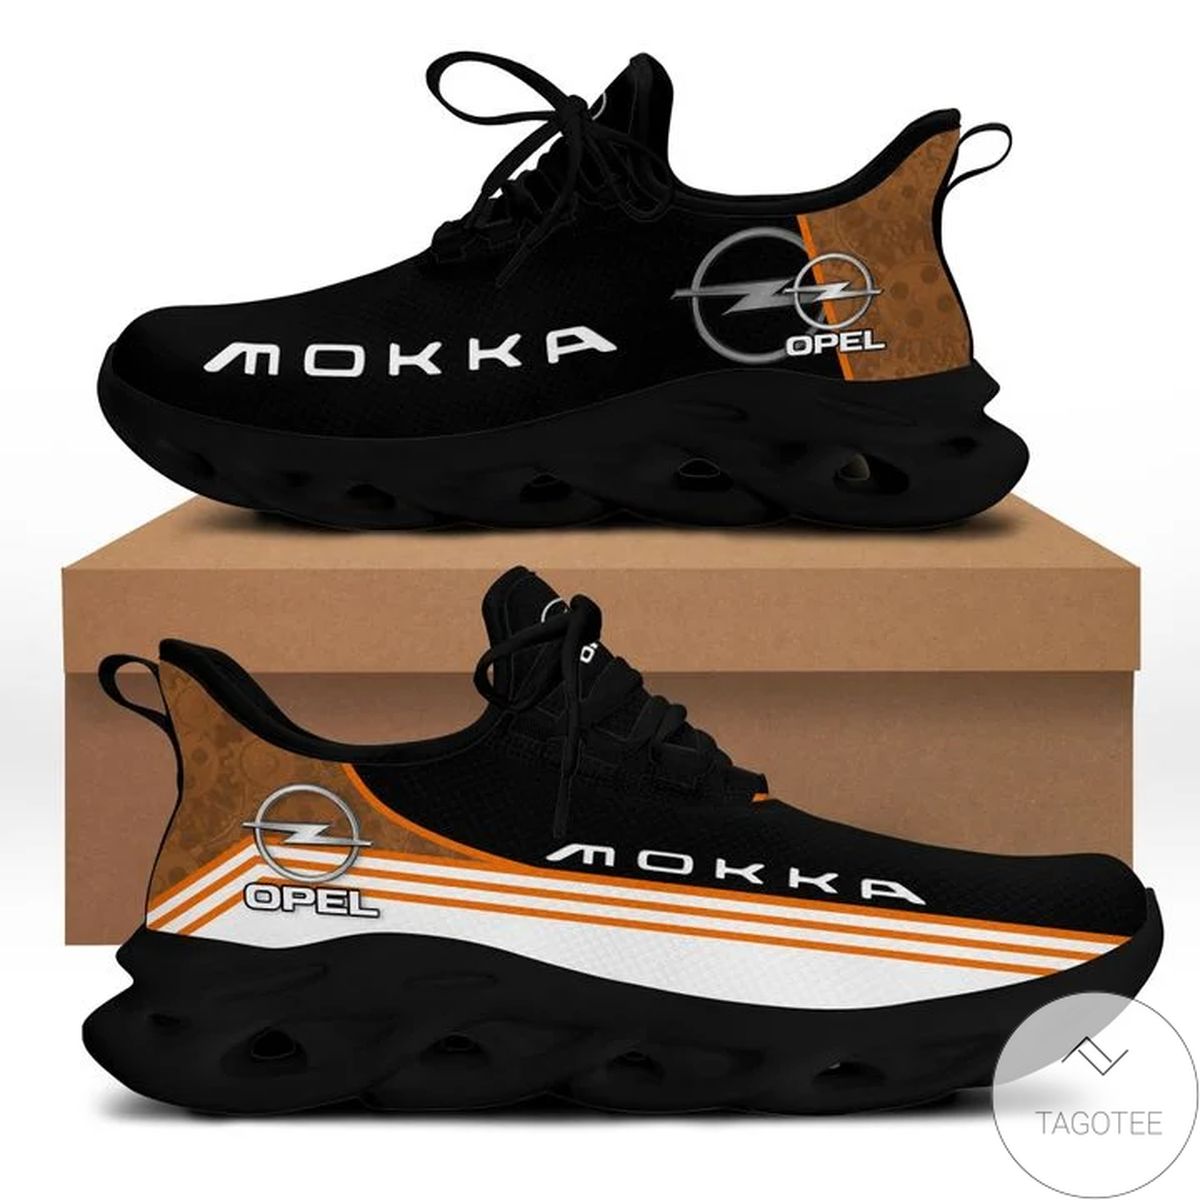 Opel MokkaYeezy Running Sneaker Max Soul Shoes